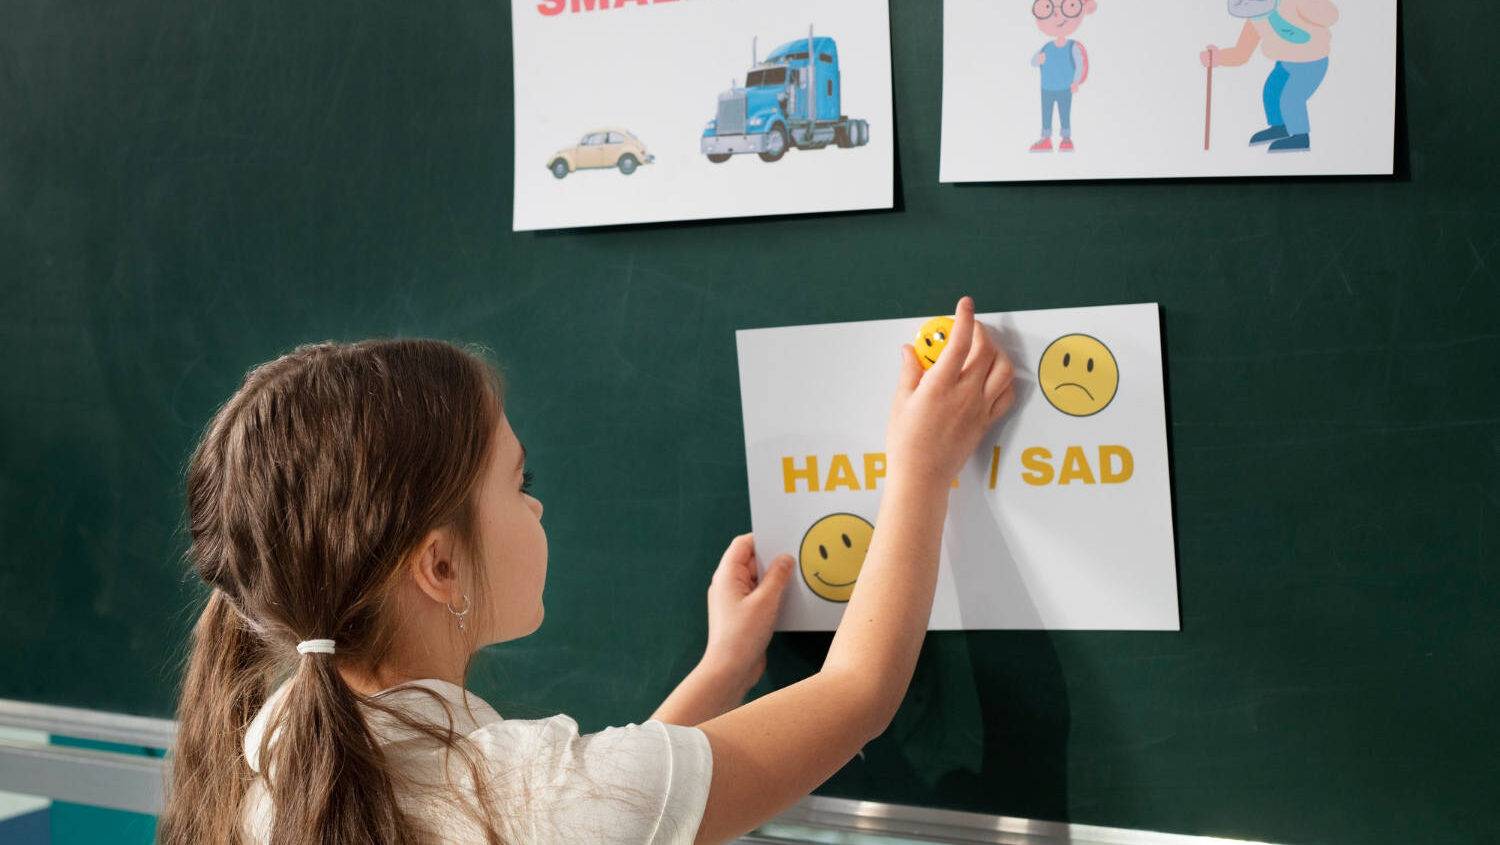 فنون تعليم اللغة الإنجليزية للأطفال: اجعلها ممتعة وتفاعلية 